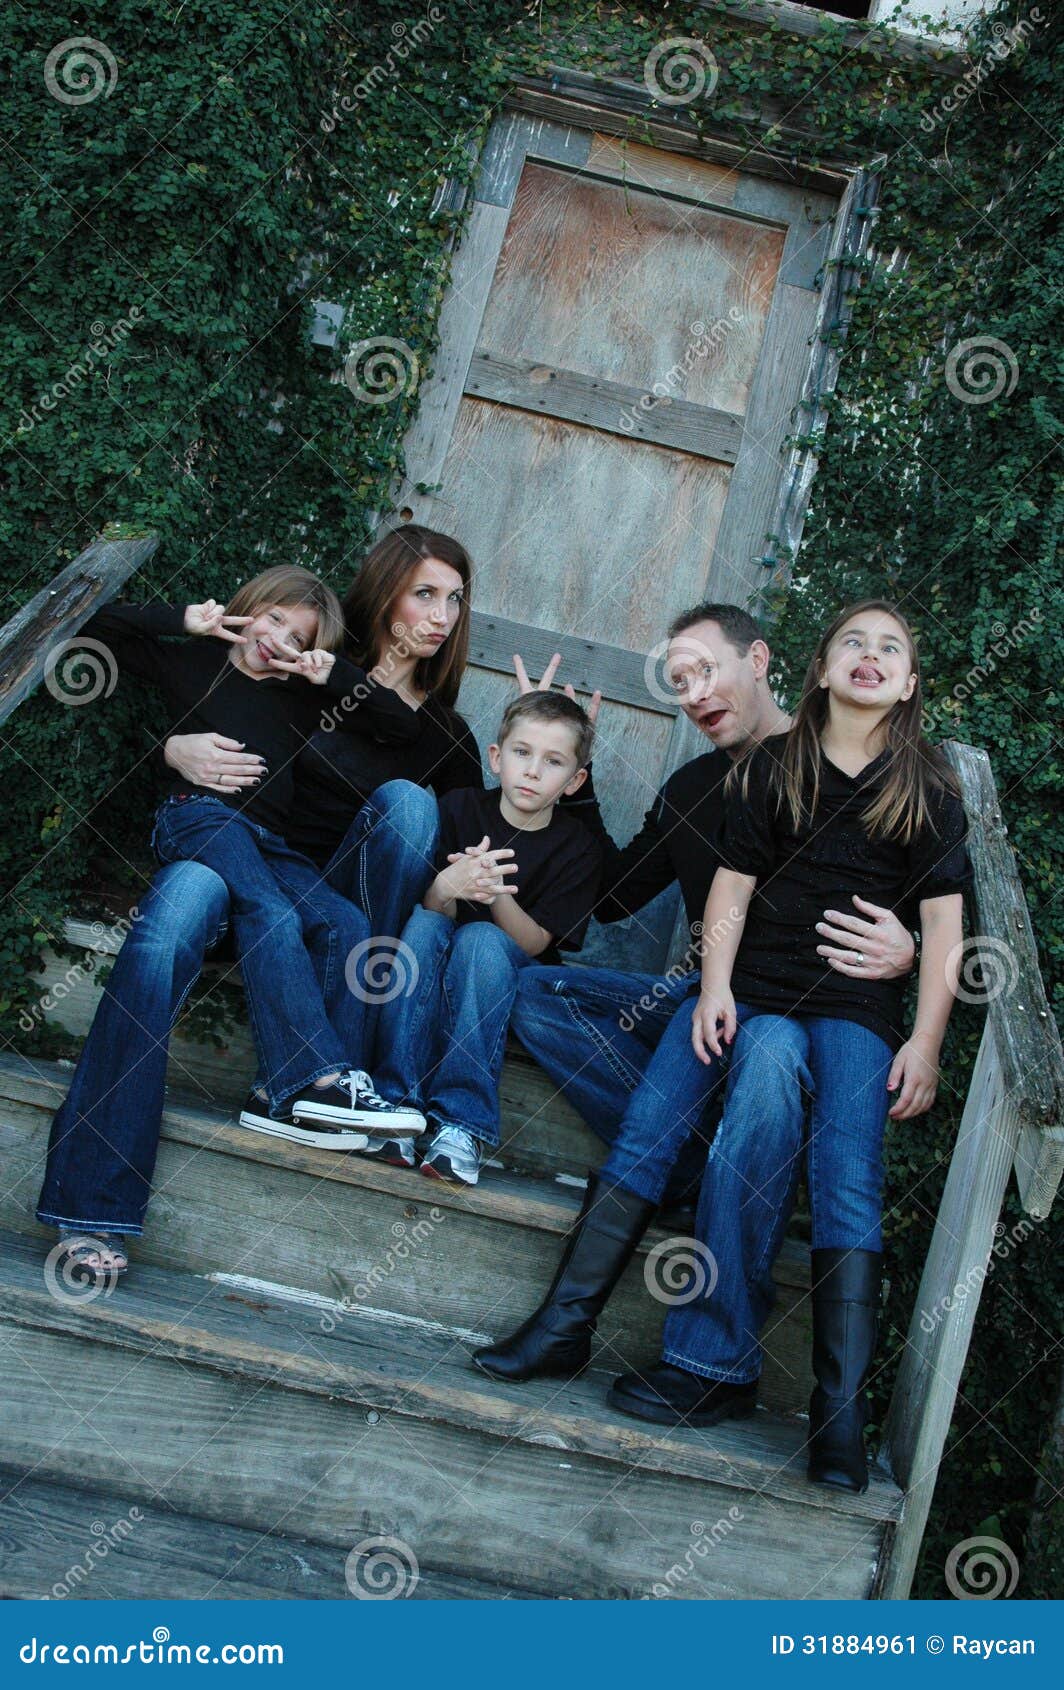 goofy family portrait